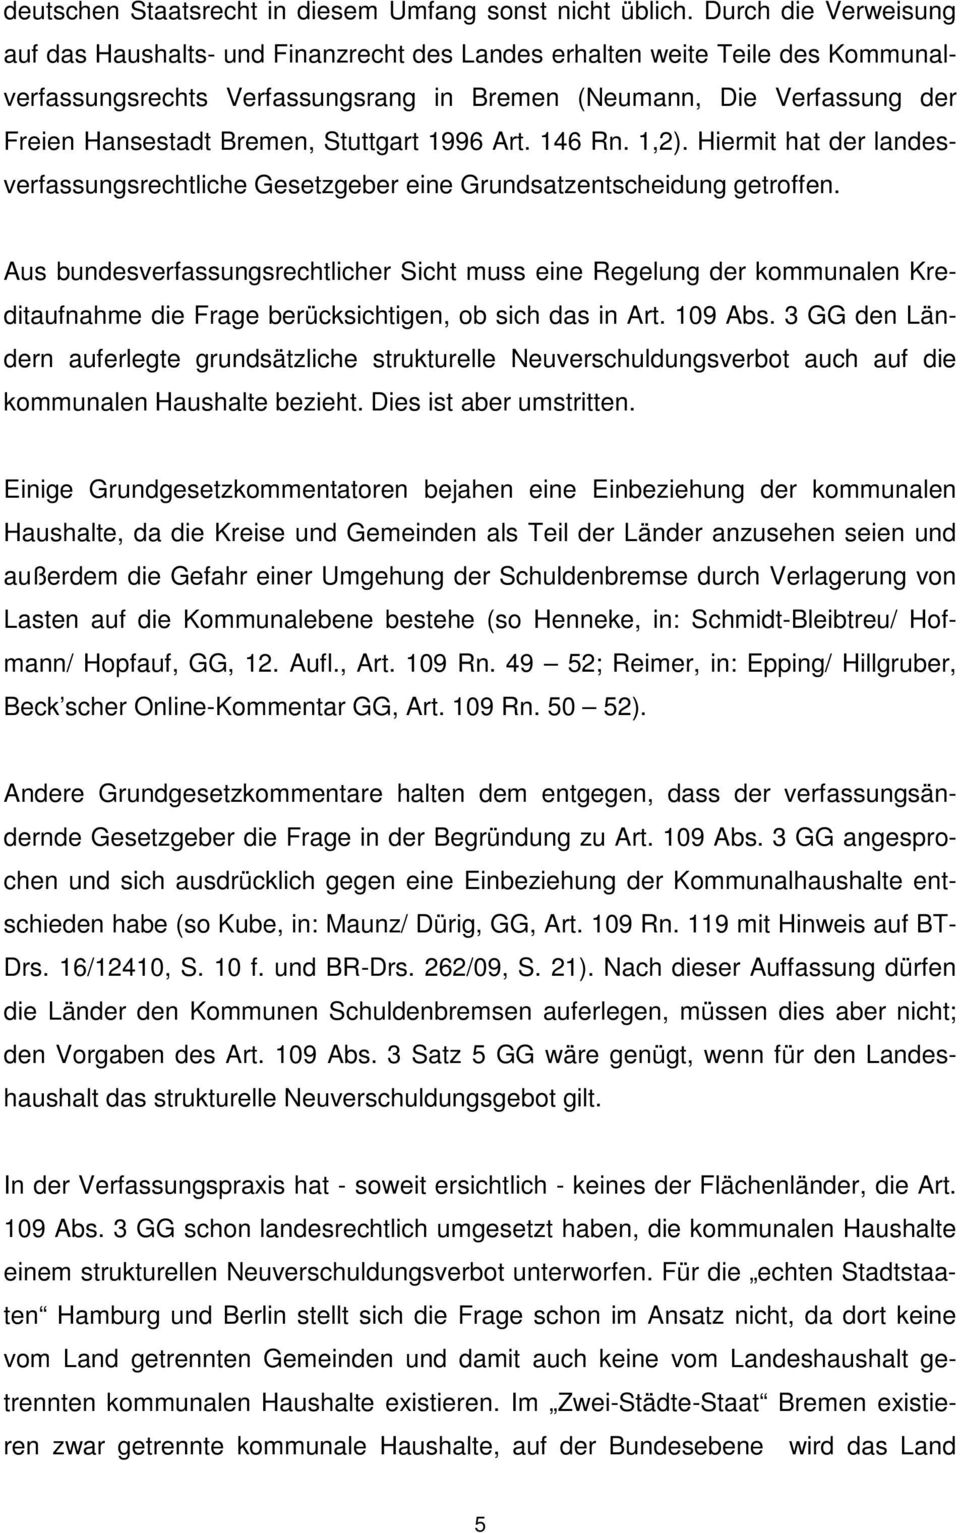 Stuttgart 1996 Art. 146 Rn. 1,2). Hiermit hat der landesverfassungsrechtliche Gesetzgeber eine Grundsatzentscheidung getroffen.